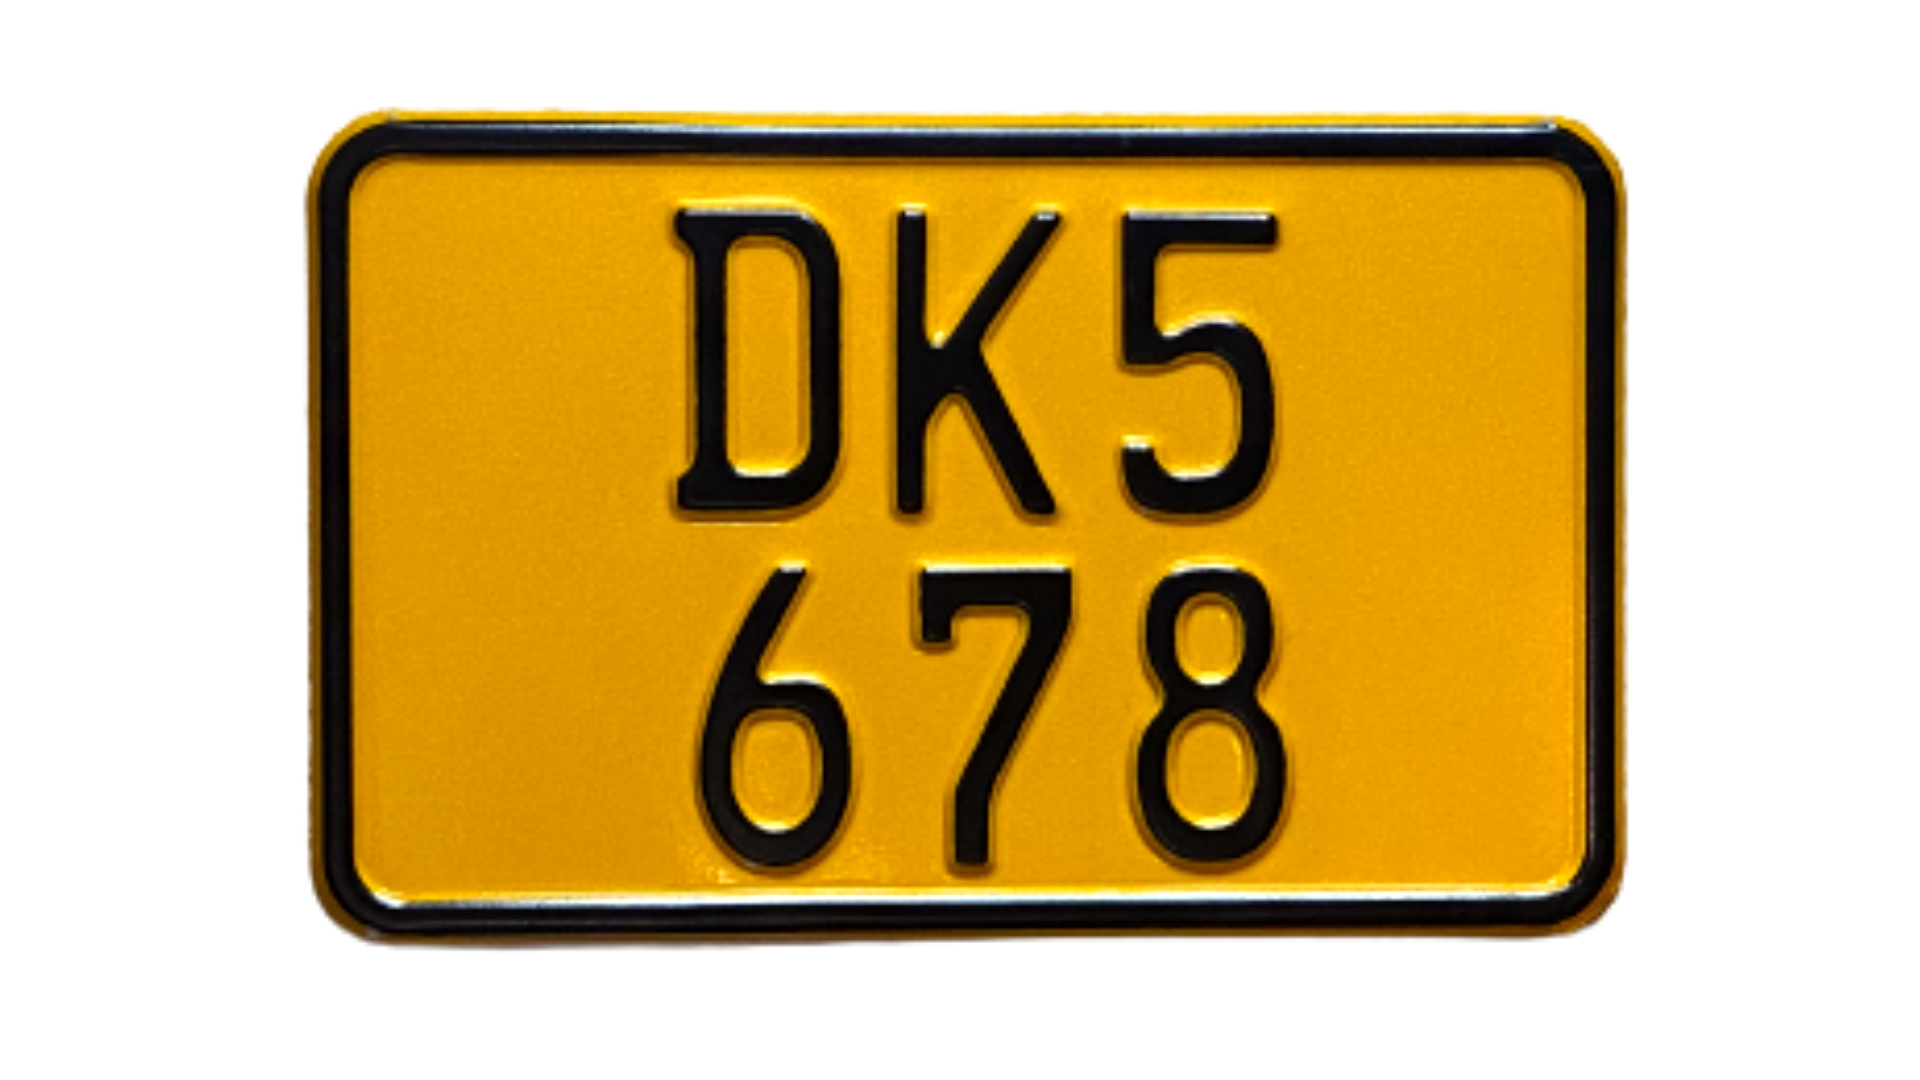 11c. Danish Knallert plate, yellow 180 x 110 mm